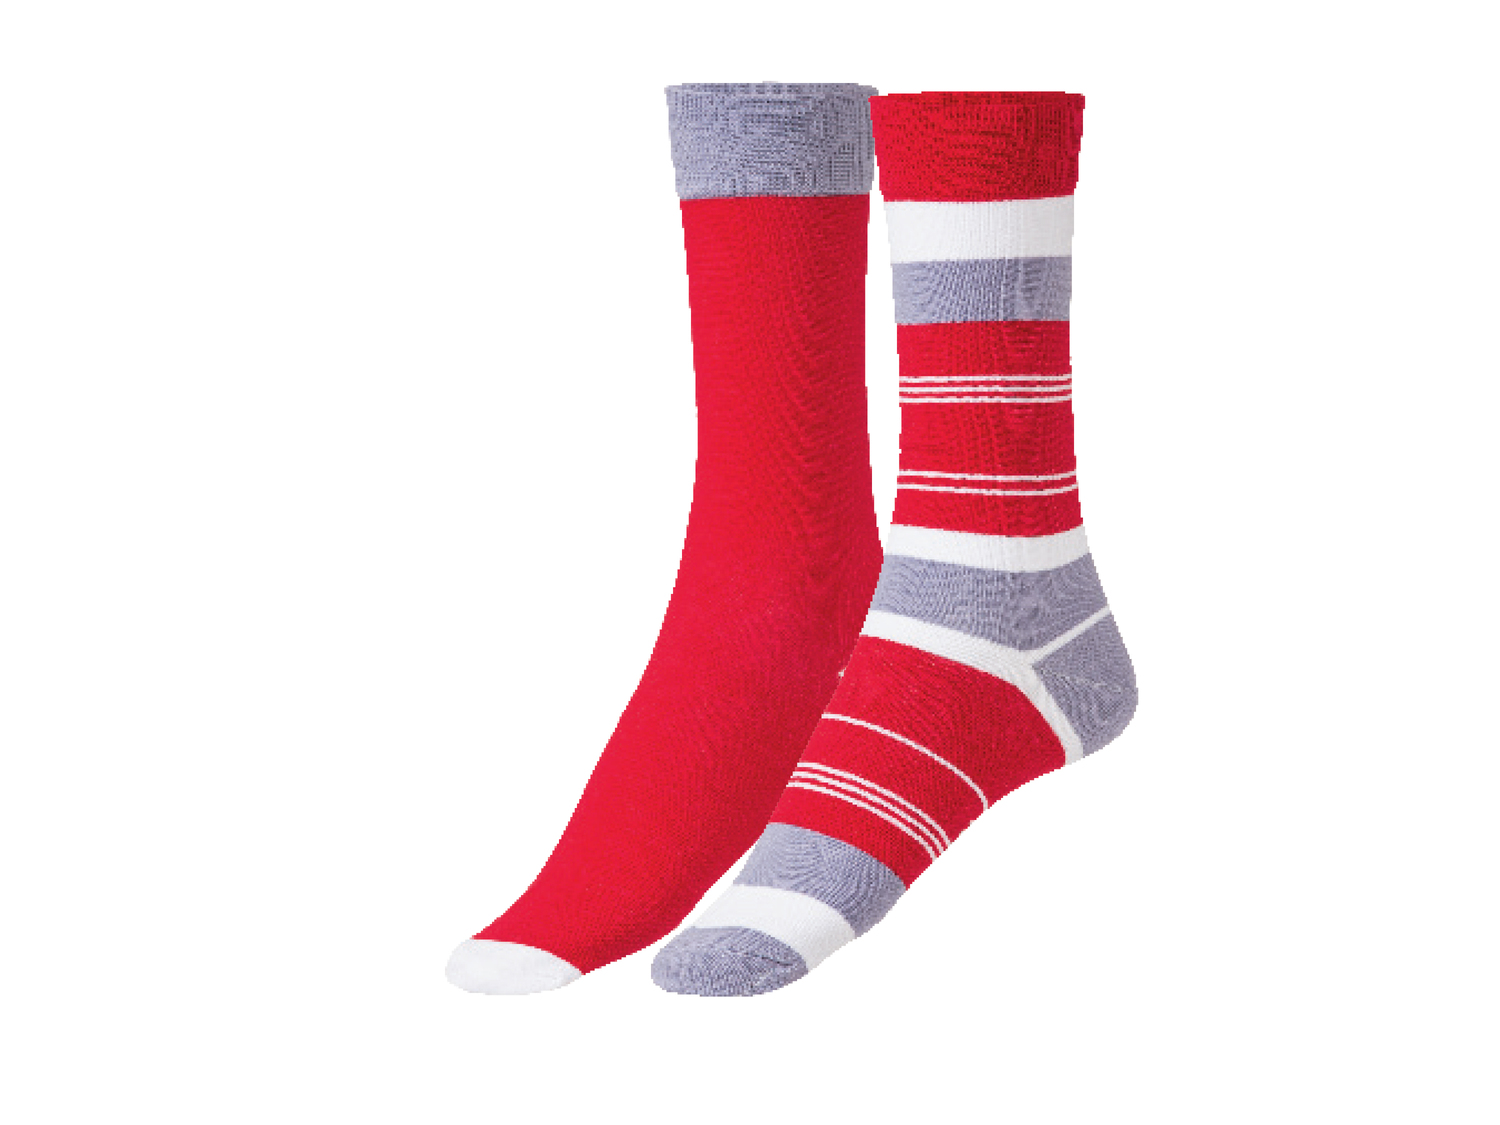 Calzini da uomo e da donna Fun-socks, prezzo 4.99 &#8364; 
2 paia - Misure: ...